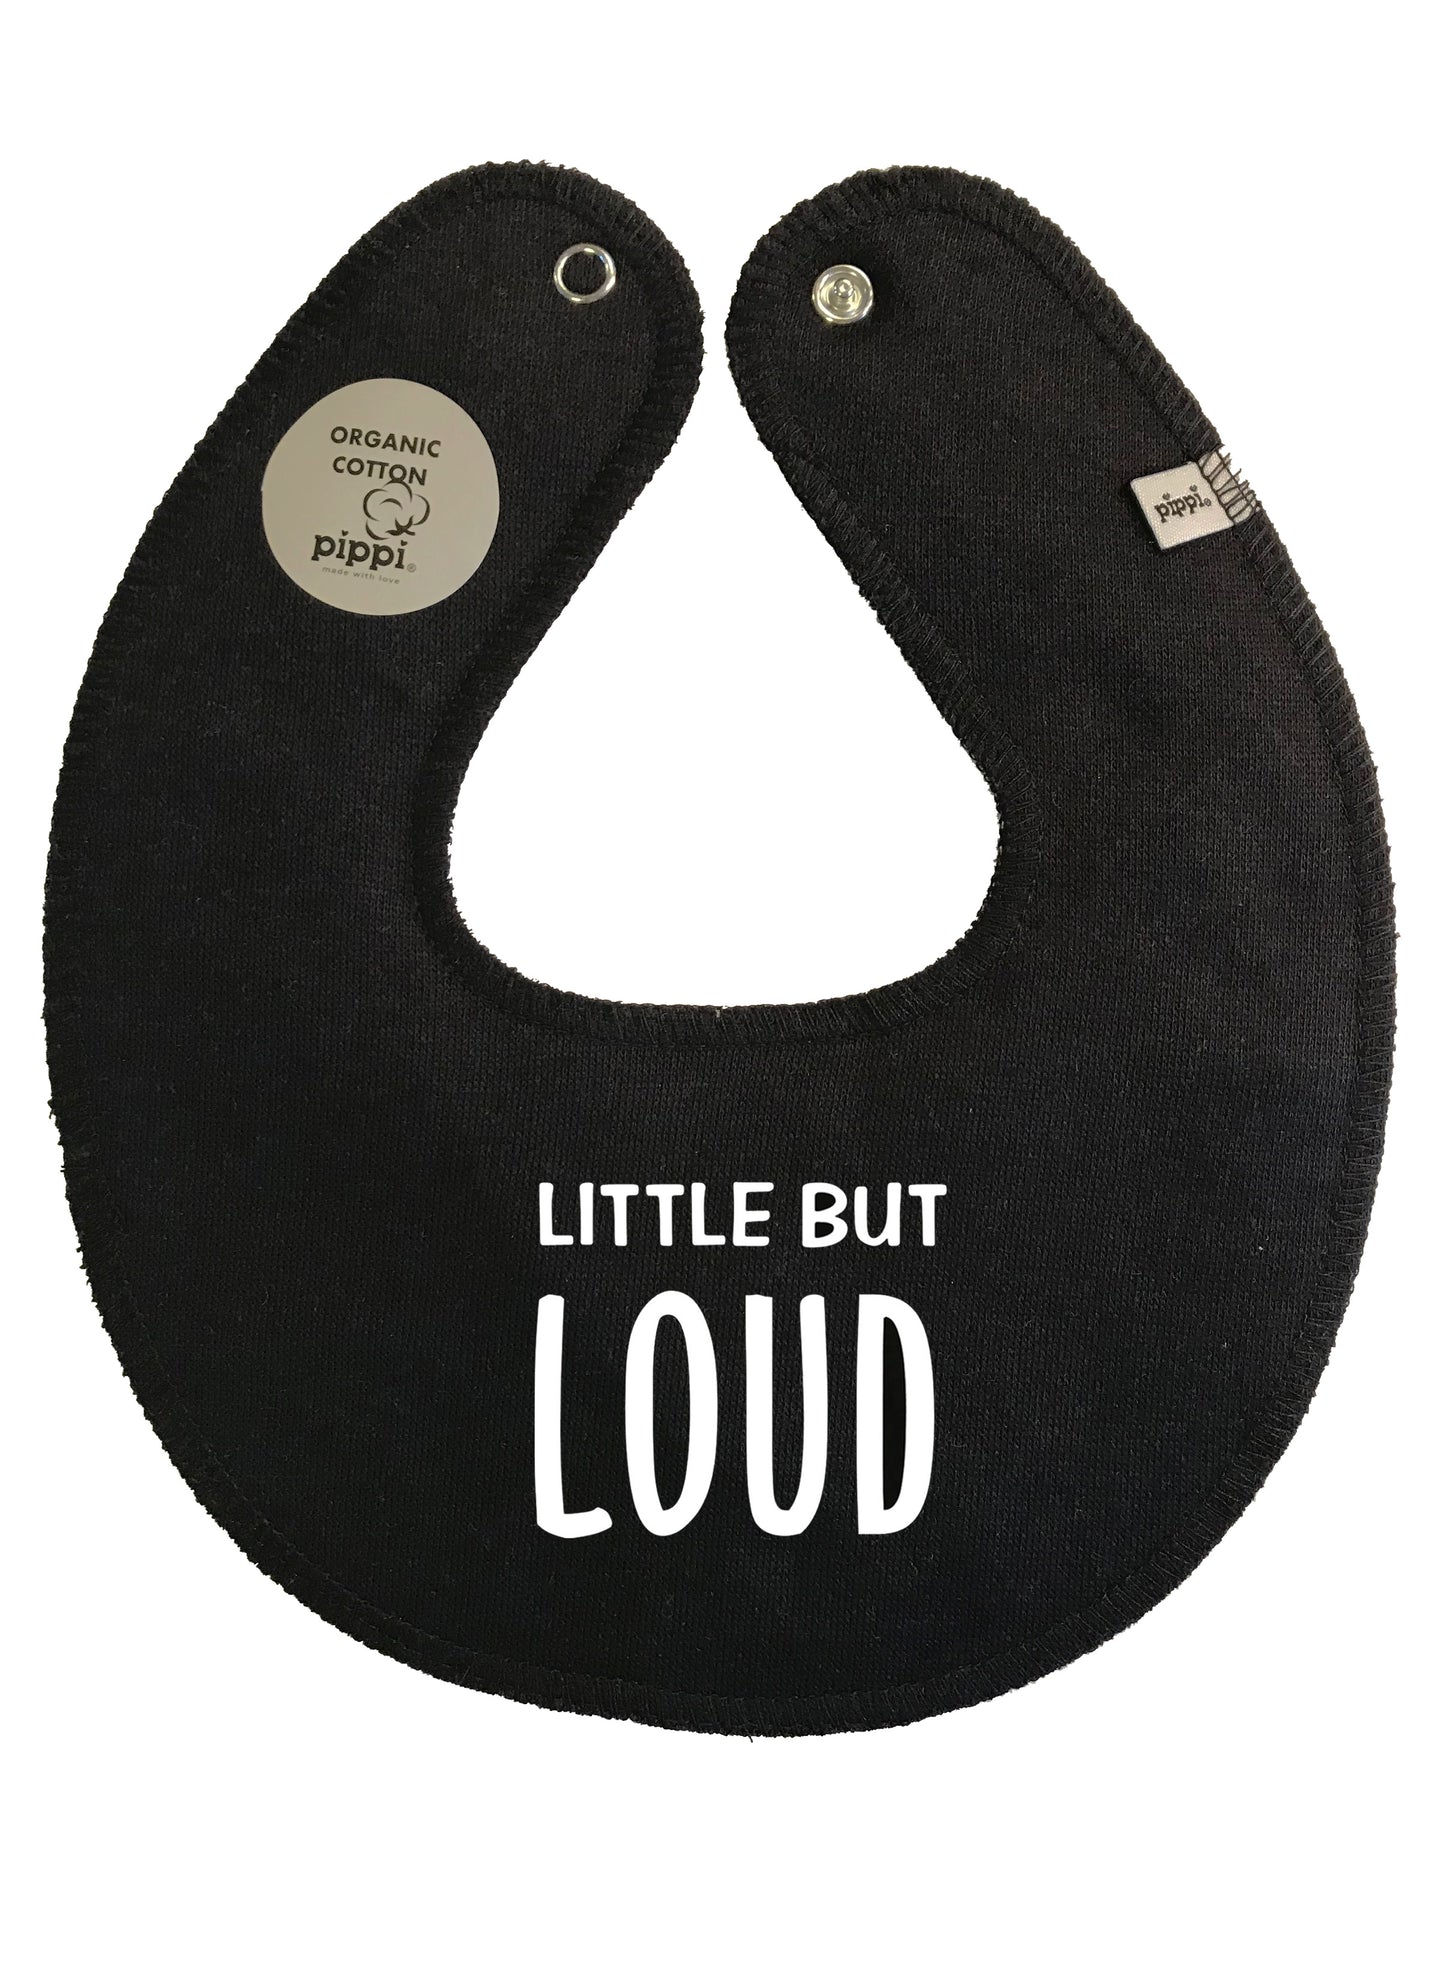 Little but loud